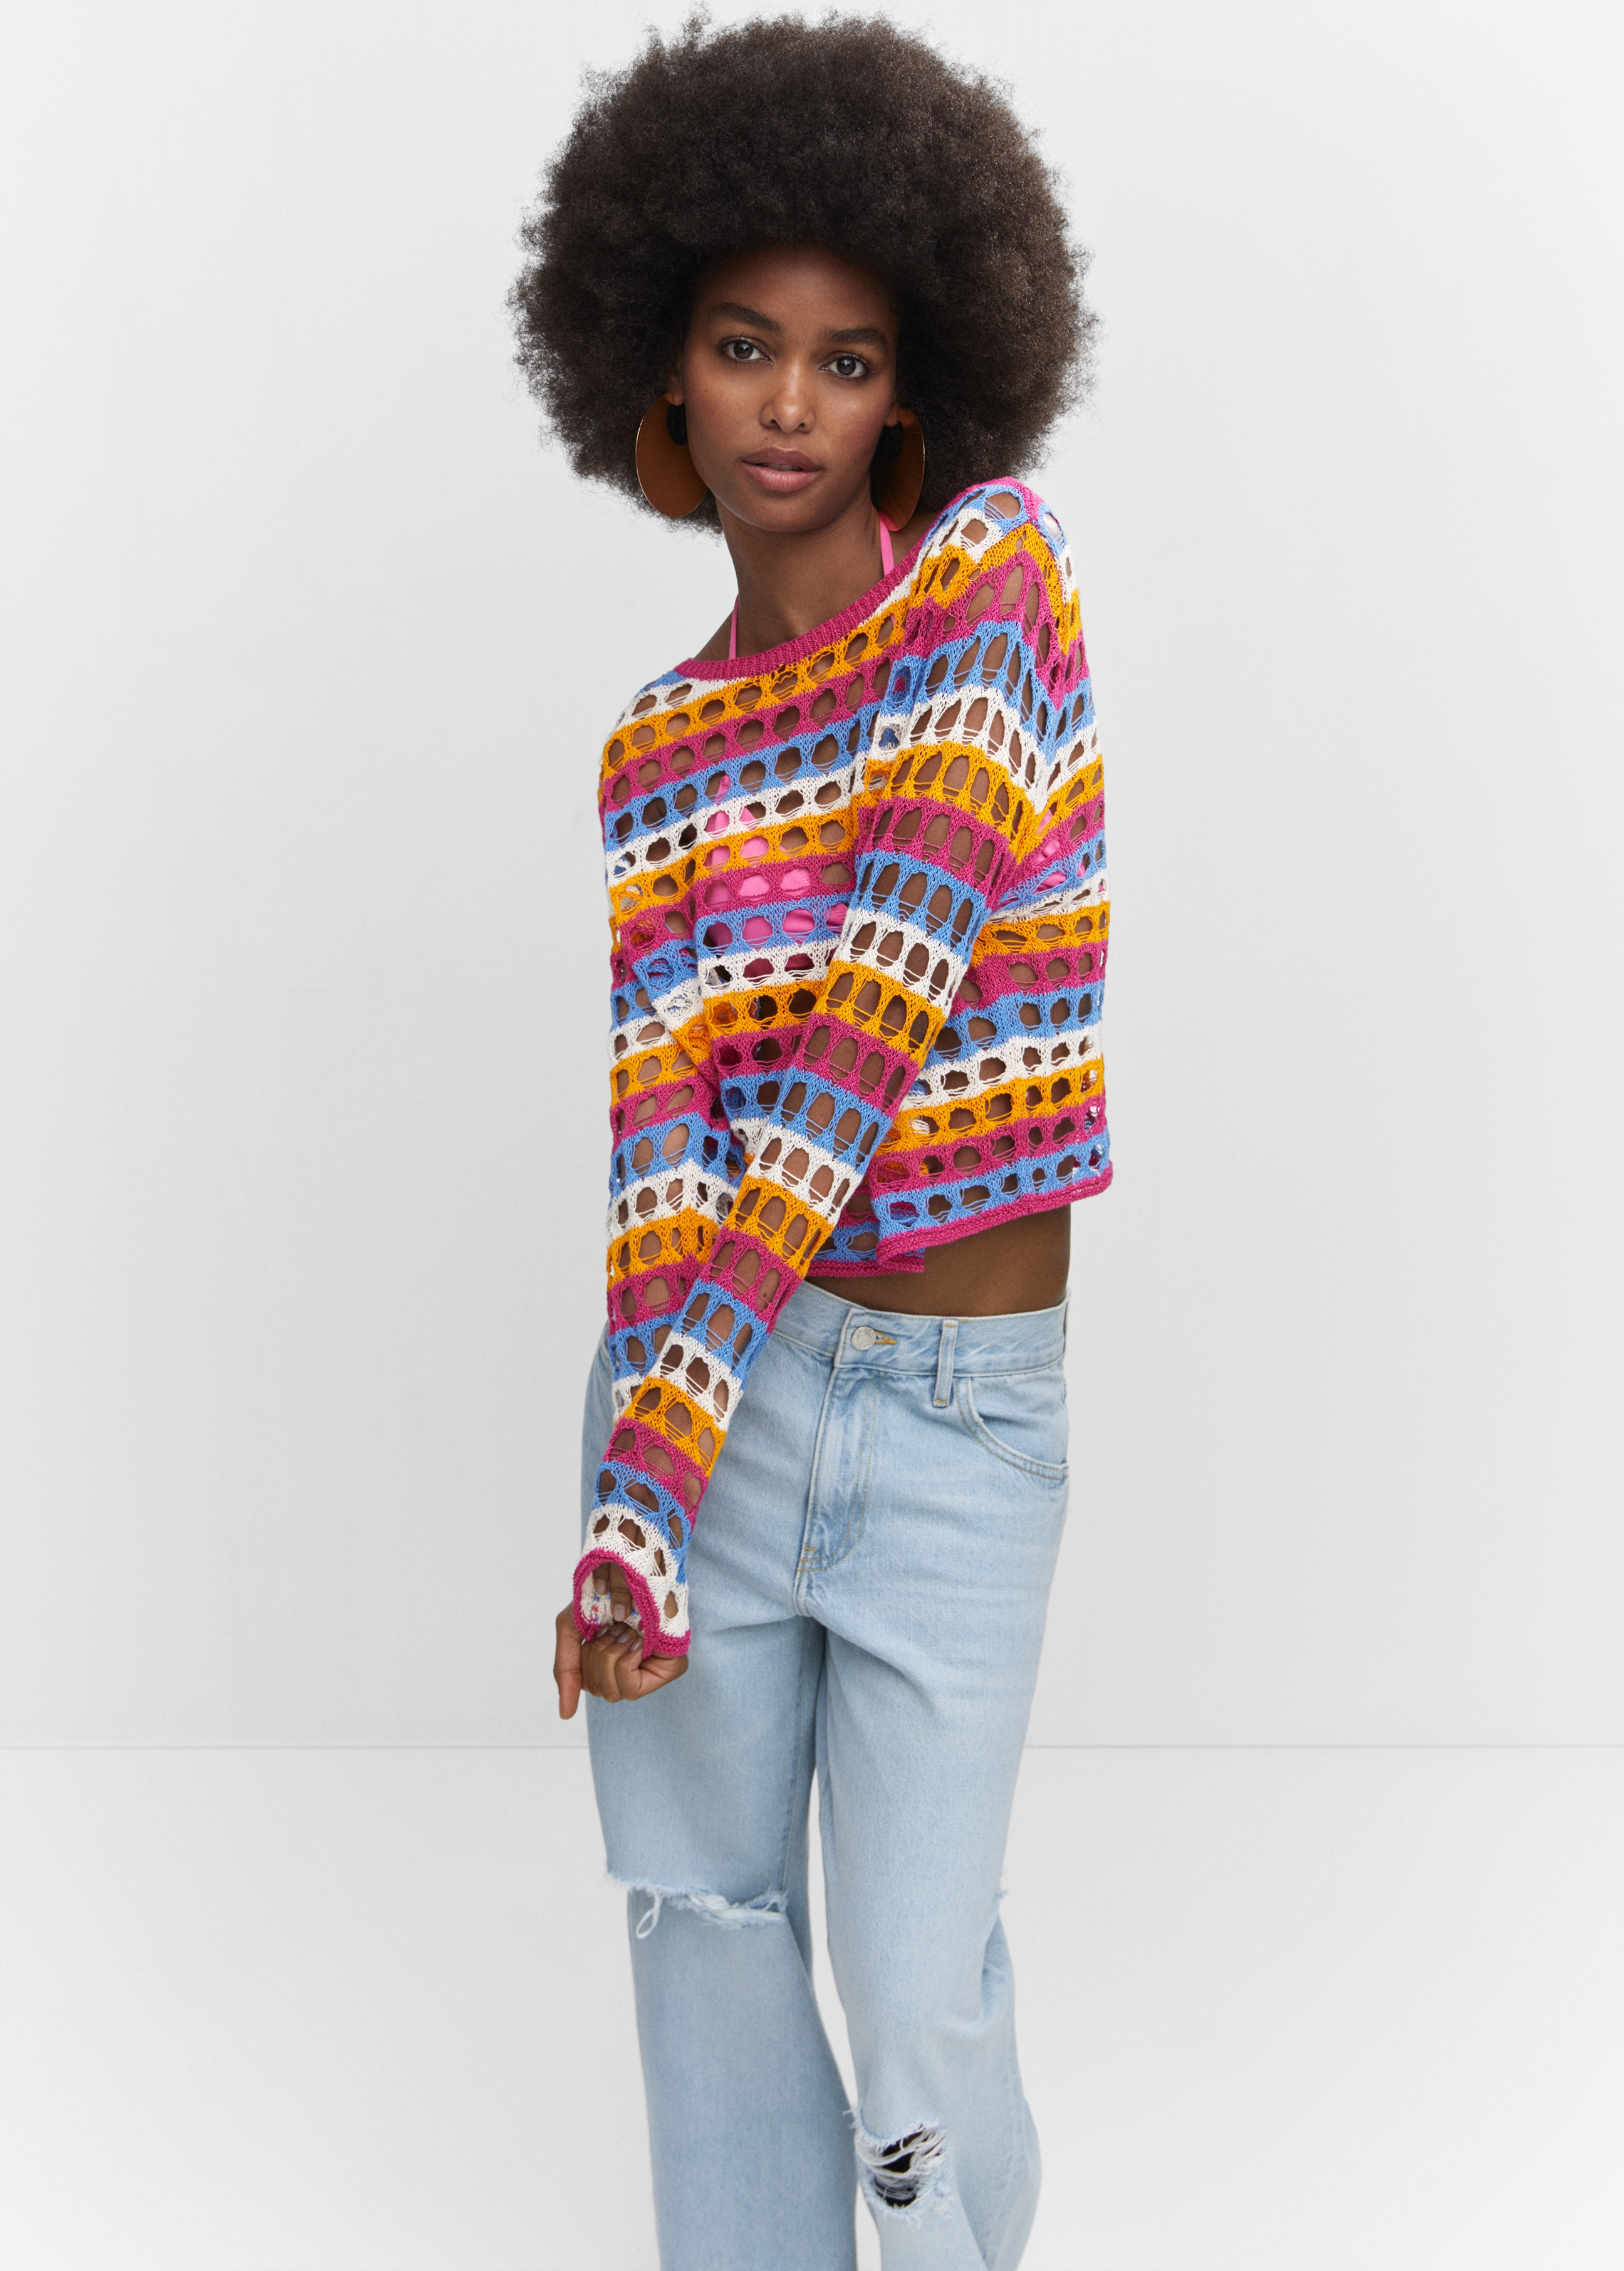 Multi-colored crochet sweater